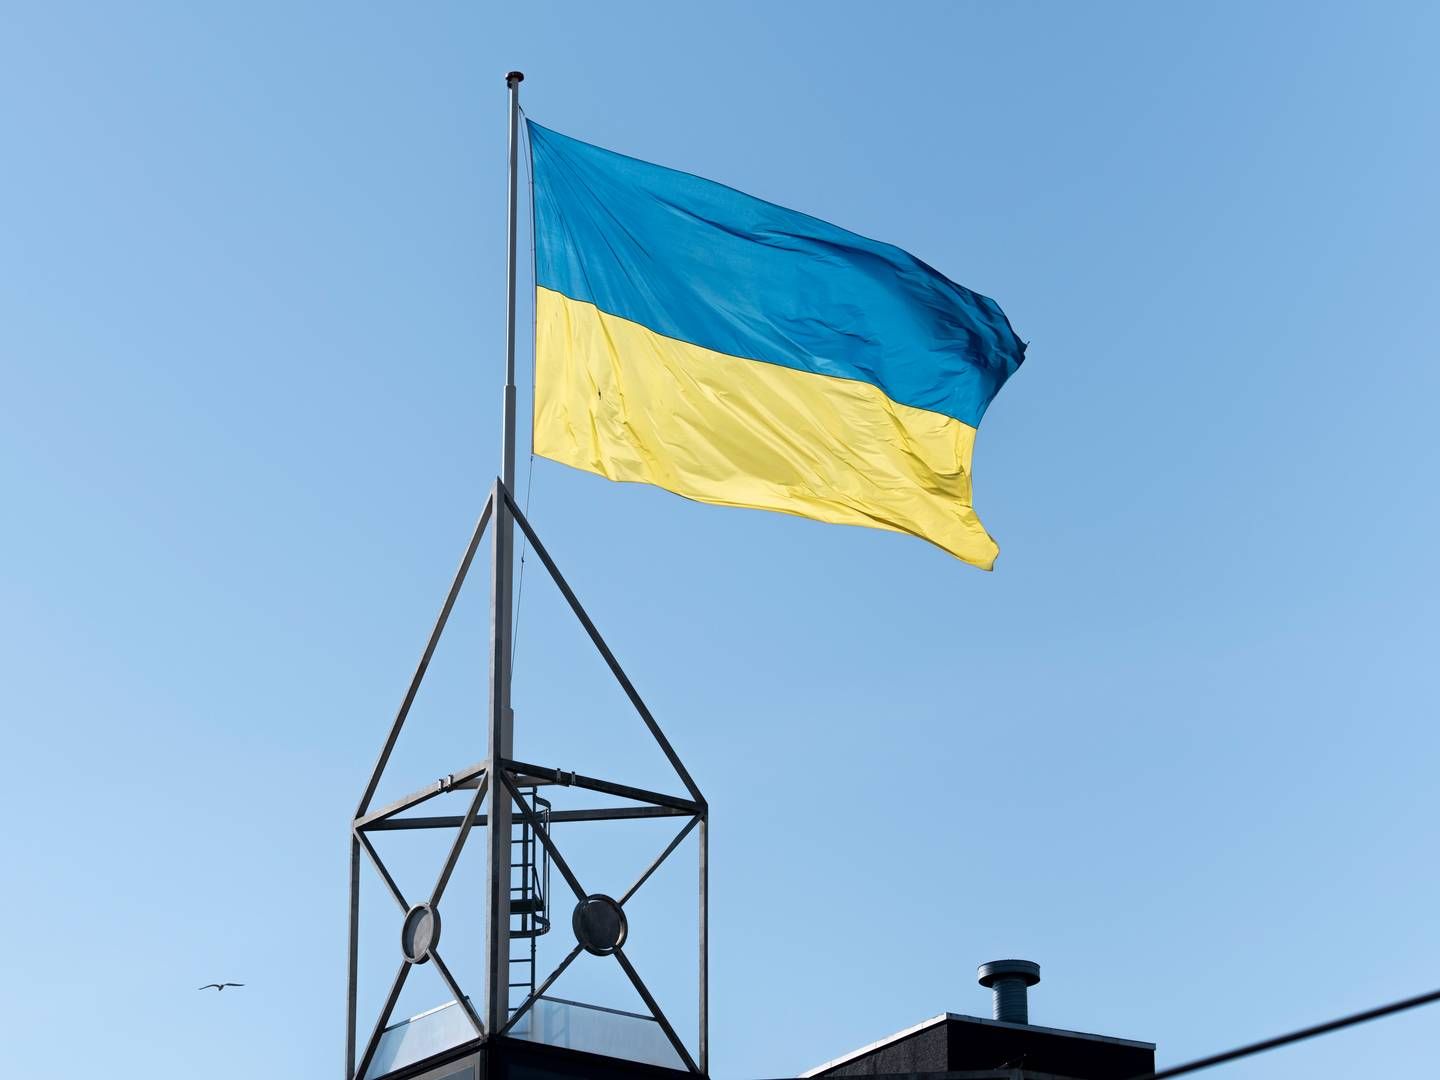 Sagen var anlagt af Ukraine, som har anklaget Rusland for at krænke Den Europæiske Menneskerettighedskonvention. | Photo: Rikke Kjær Poulsen